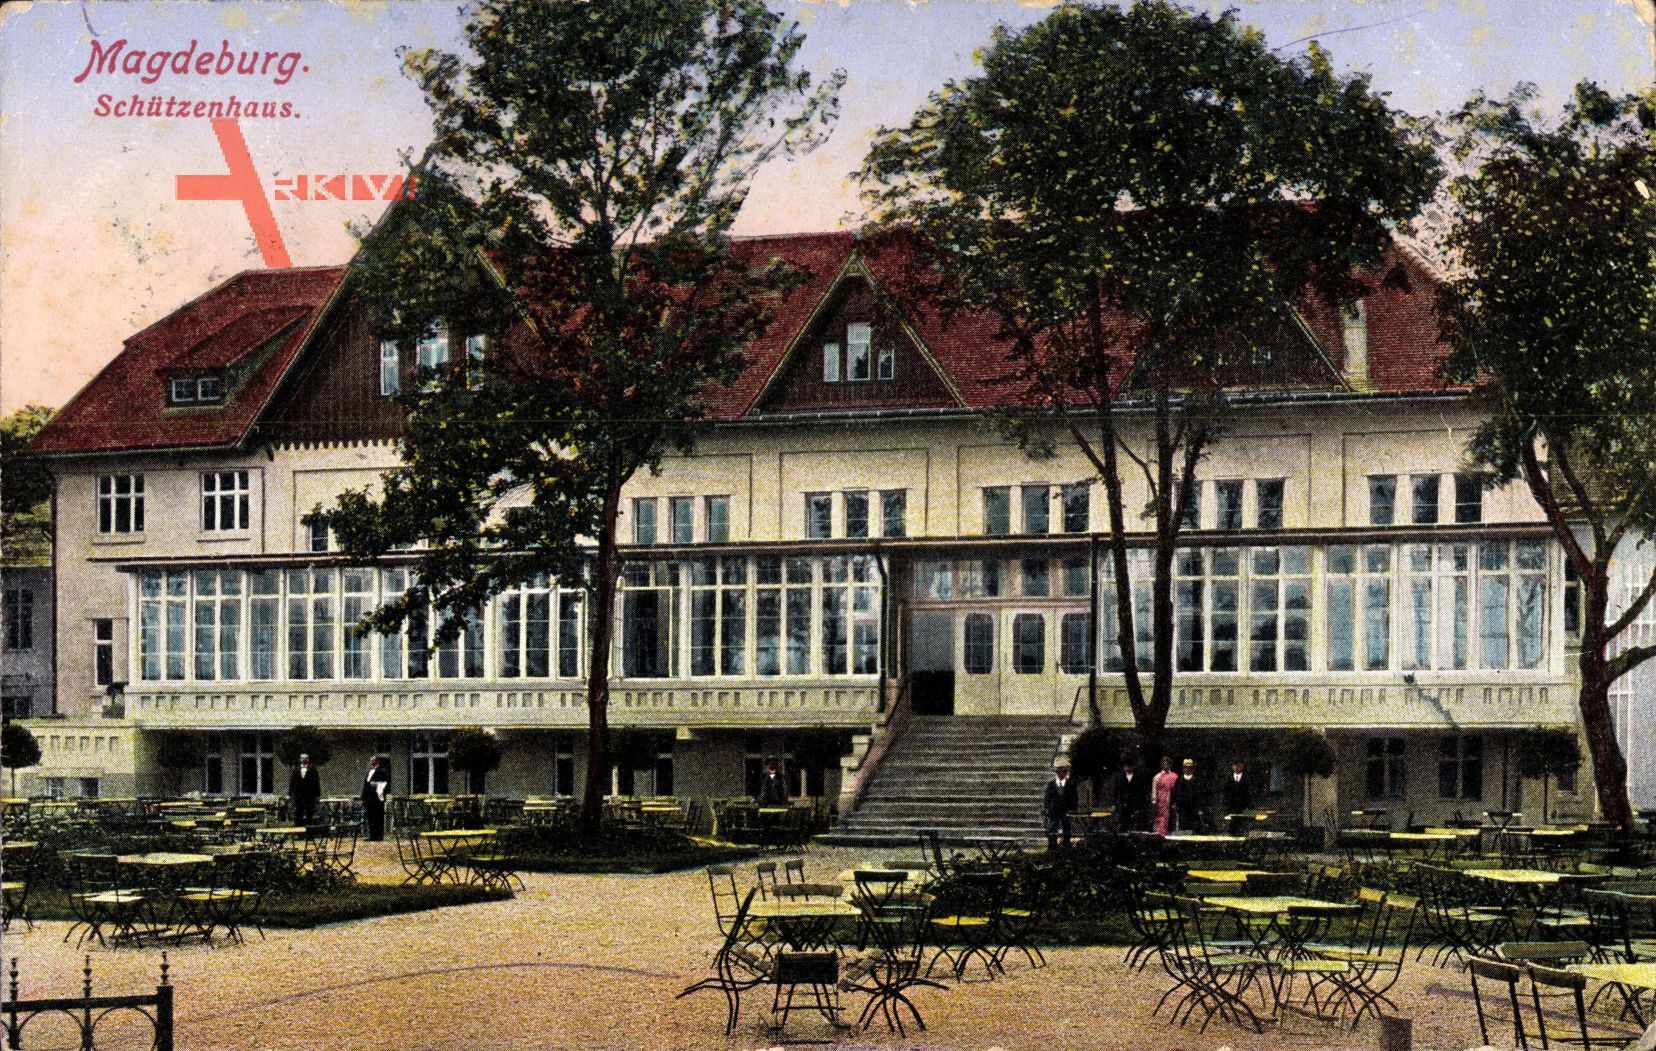 Magdeburg in Sachsen Anhalt, Das Schützenhaus mit Garten